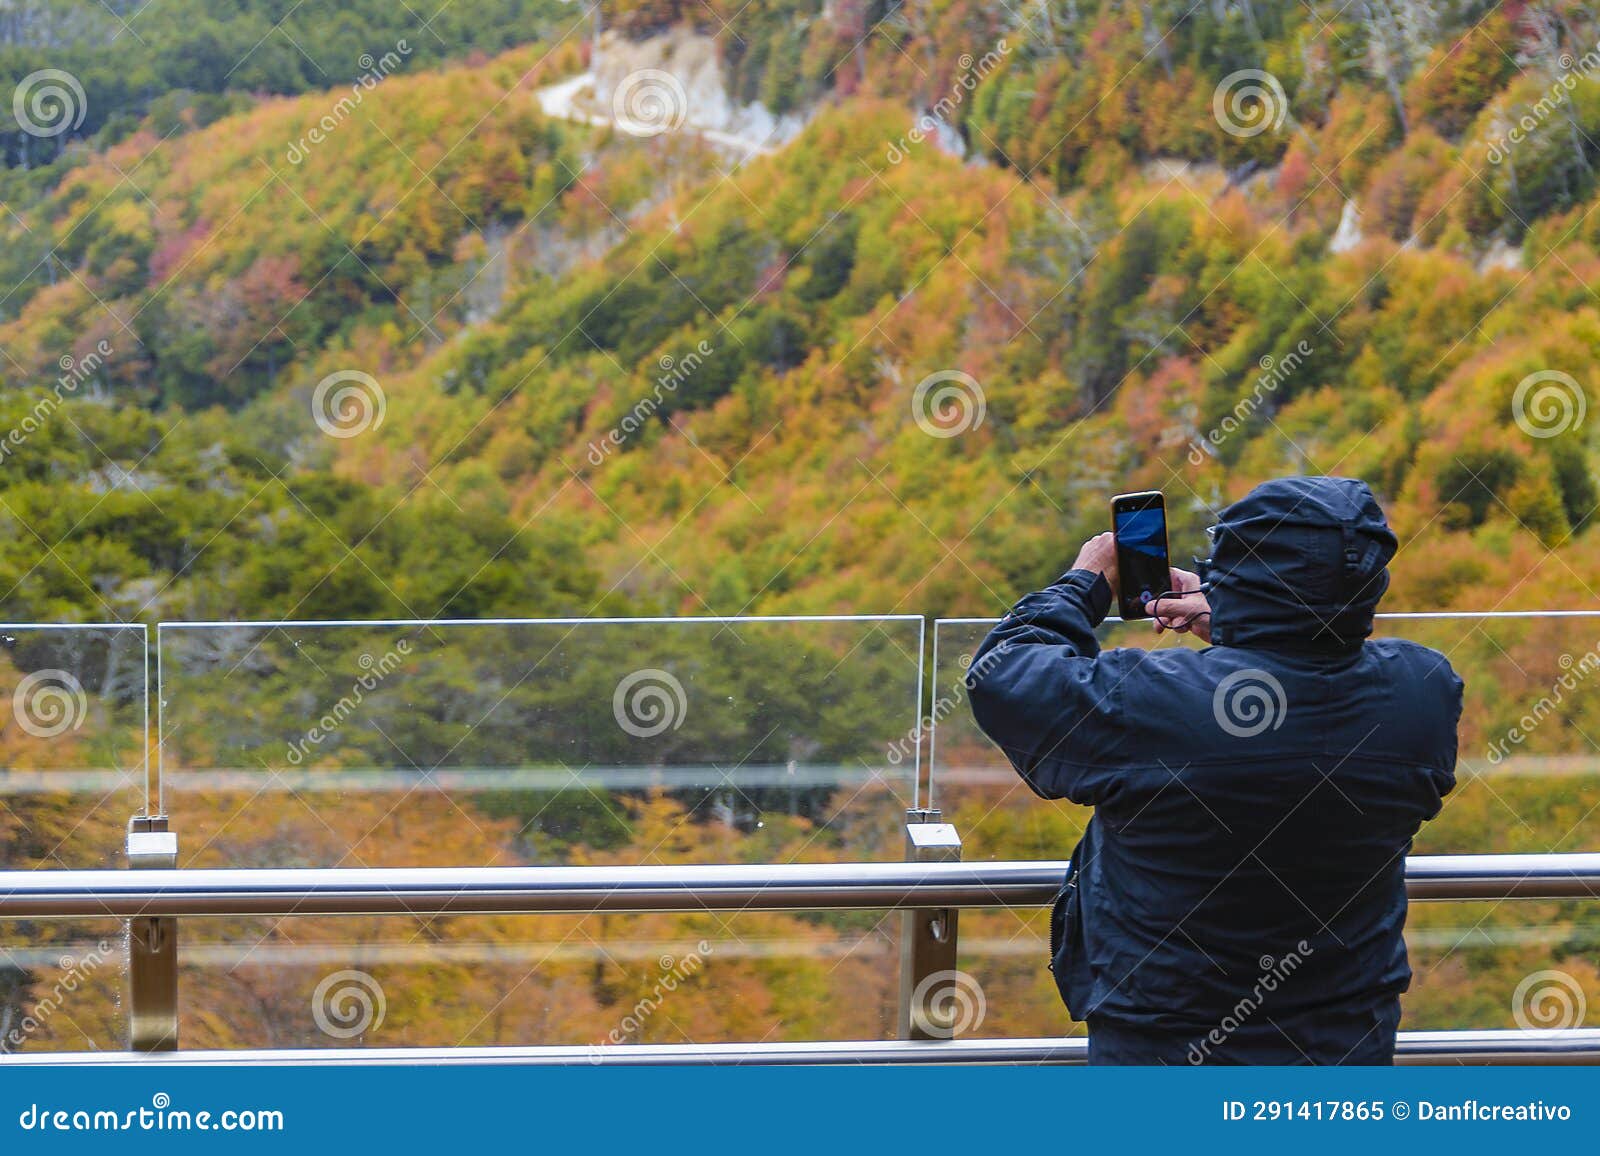 man taking photos at mirador garibaldi, tierra del fuego, argentina